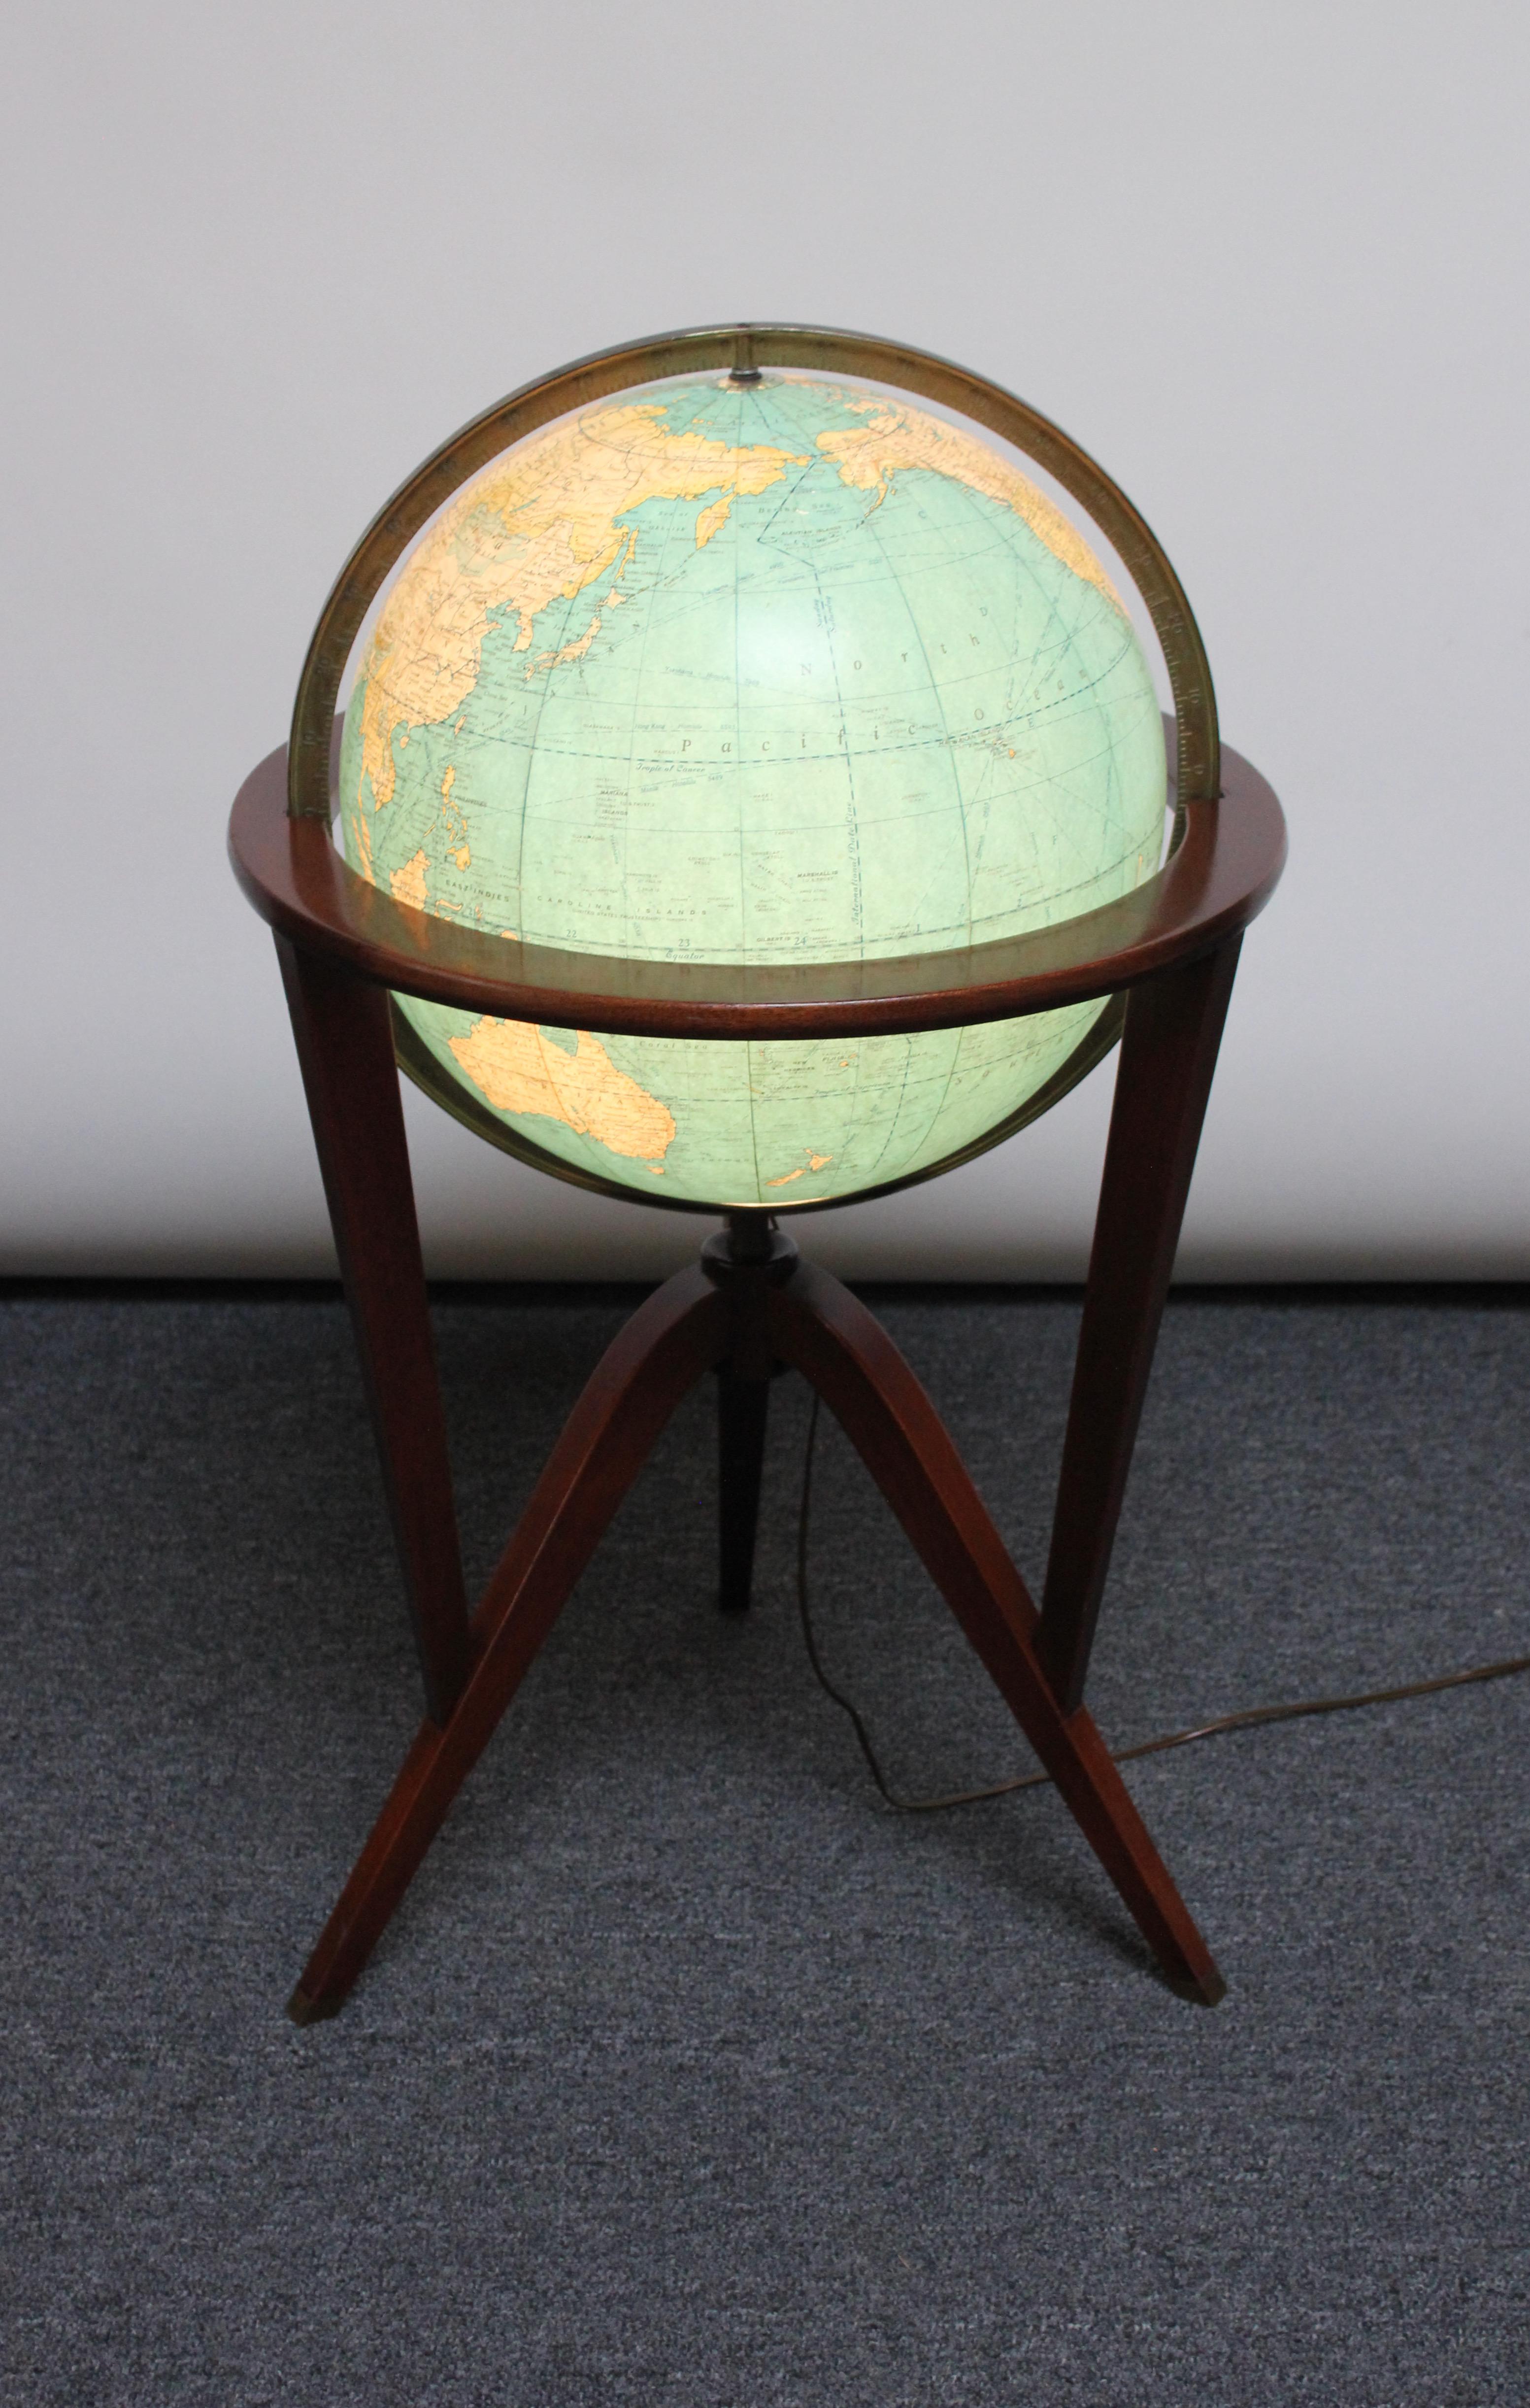 Skulpturaler Globenständer aus Mahagoni, getragen von Messing-Sabots, ursprünglich entworfen von Edward Wormley für Dunbar im Jahr 1953. Der Globus selbst ist ein 16-Zoll-Rand-McNally-Terra-Globus, der aus Papierstreifen über Glas mit einem Meridian